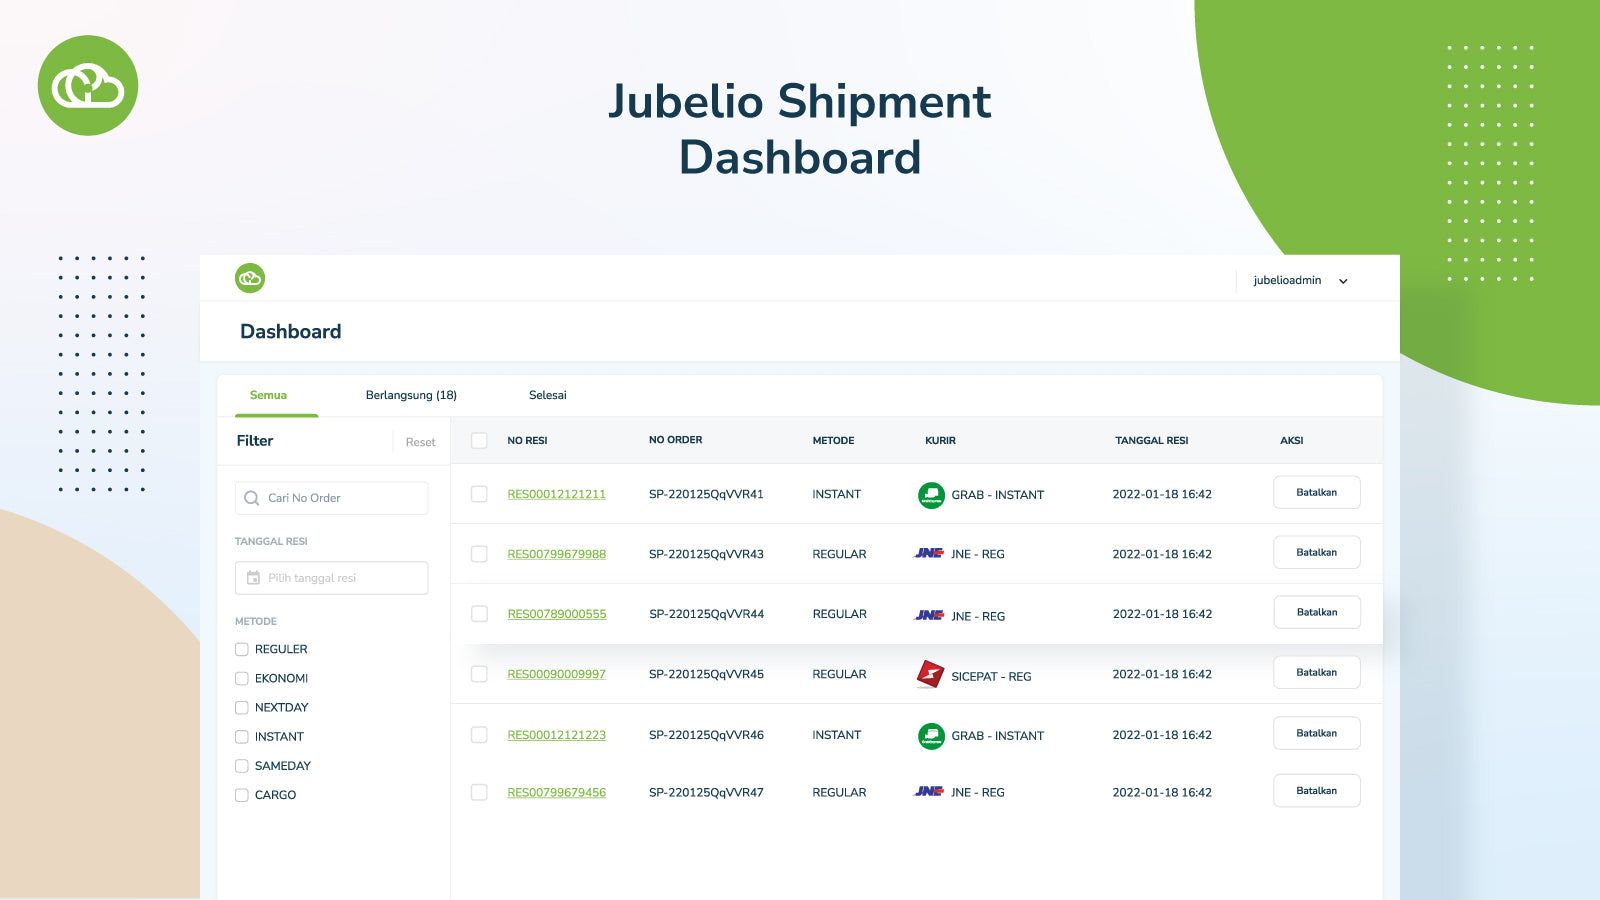 Link to Jubelio Shipment Dashboard